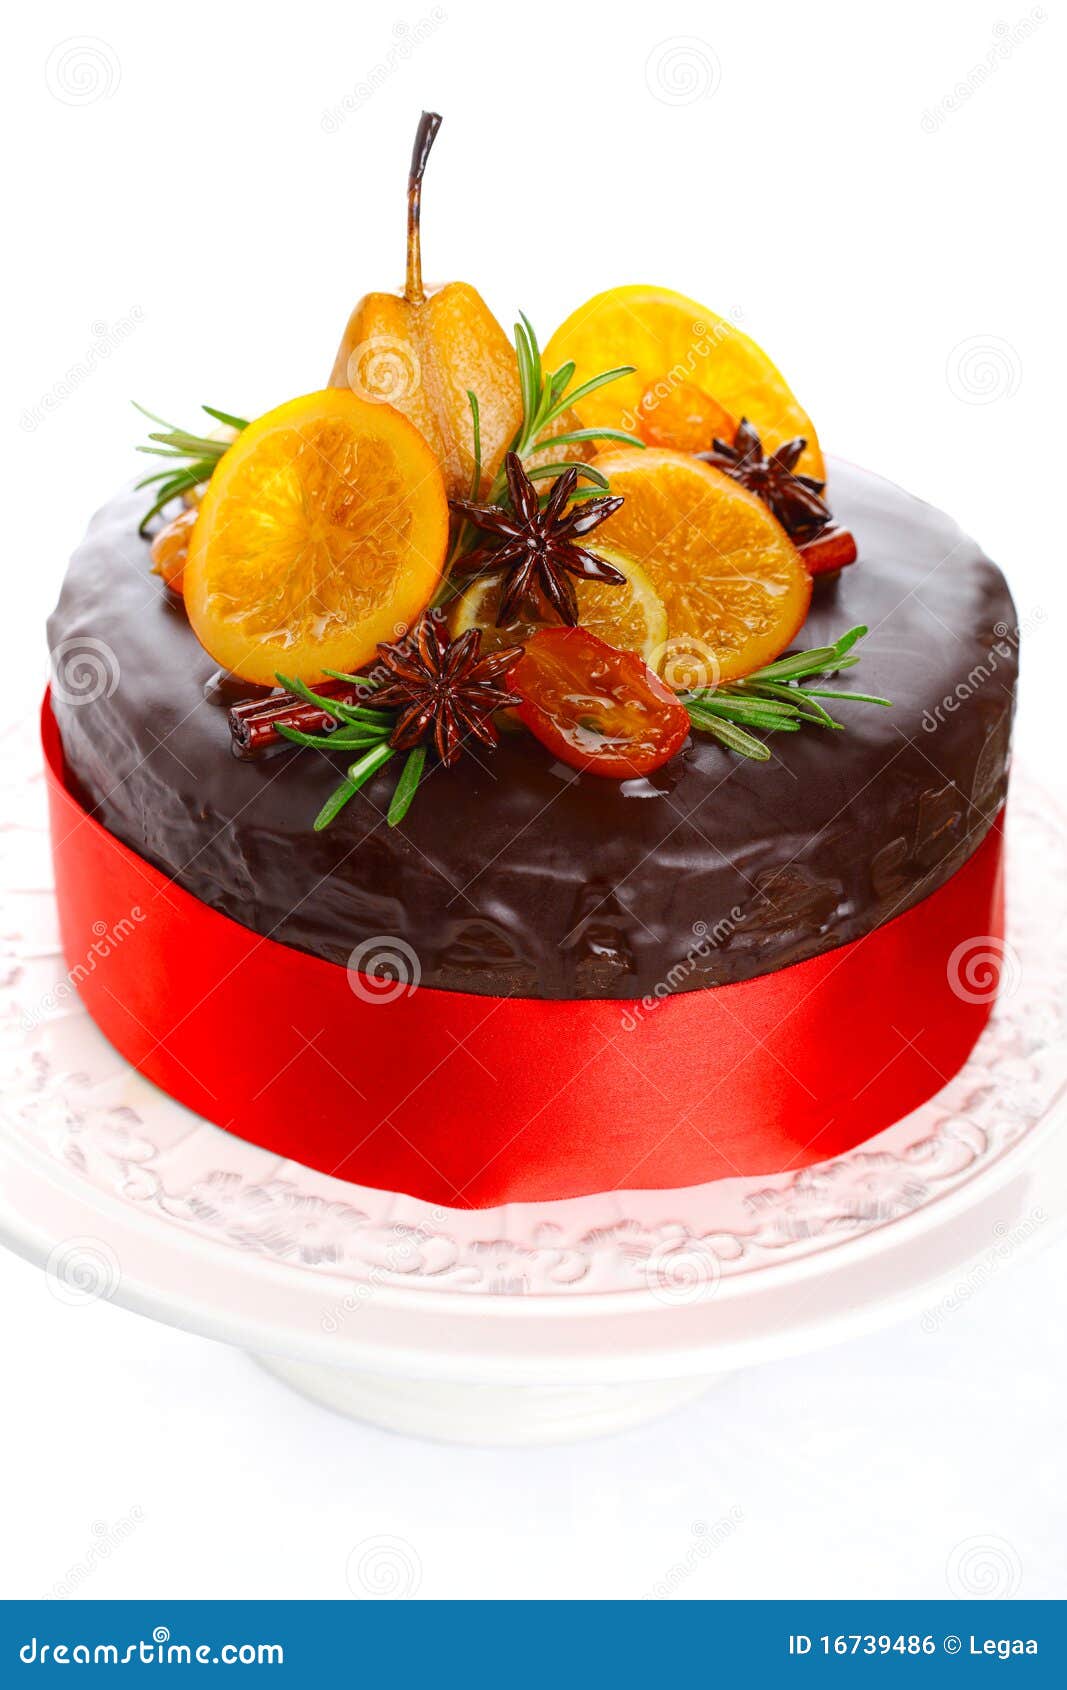 Beautiful Chocolate Cake With Glazed Fruit Stock Photo - Image of ...